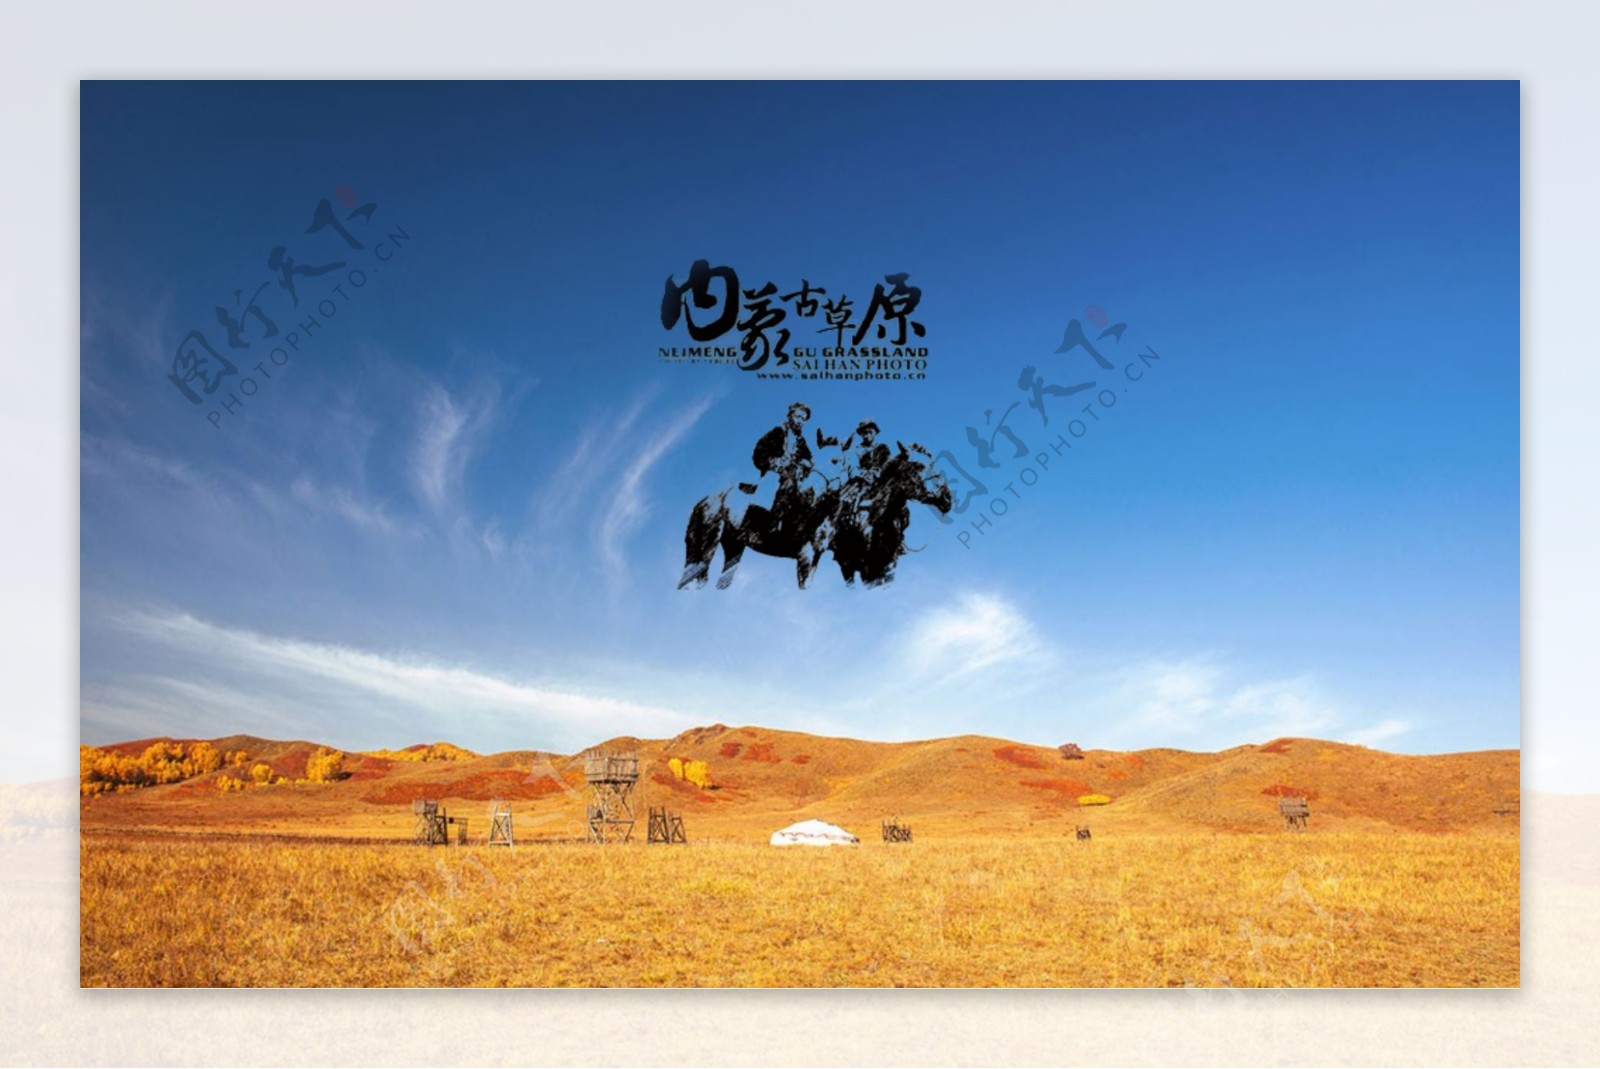 蒙古大草原字体和牧民